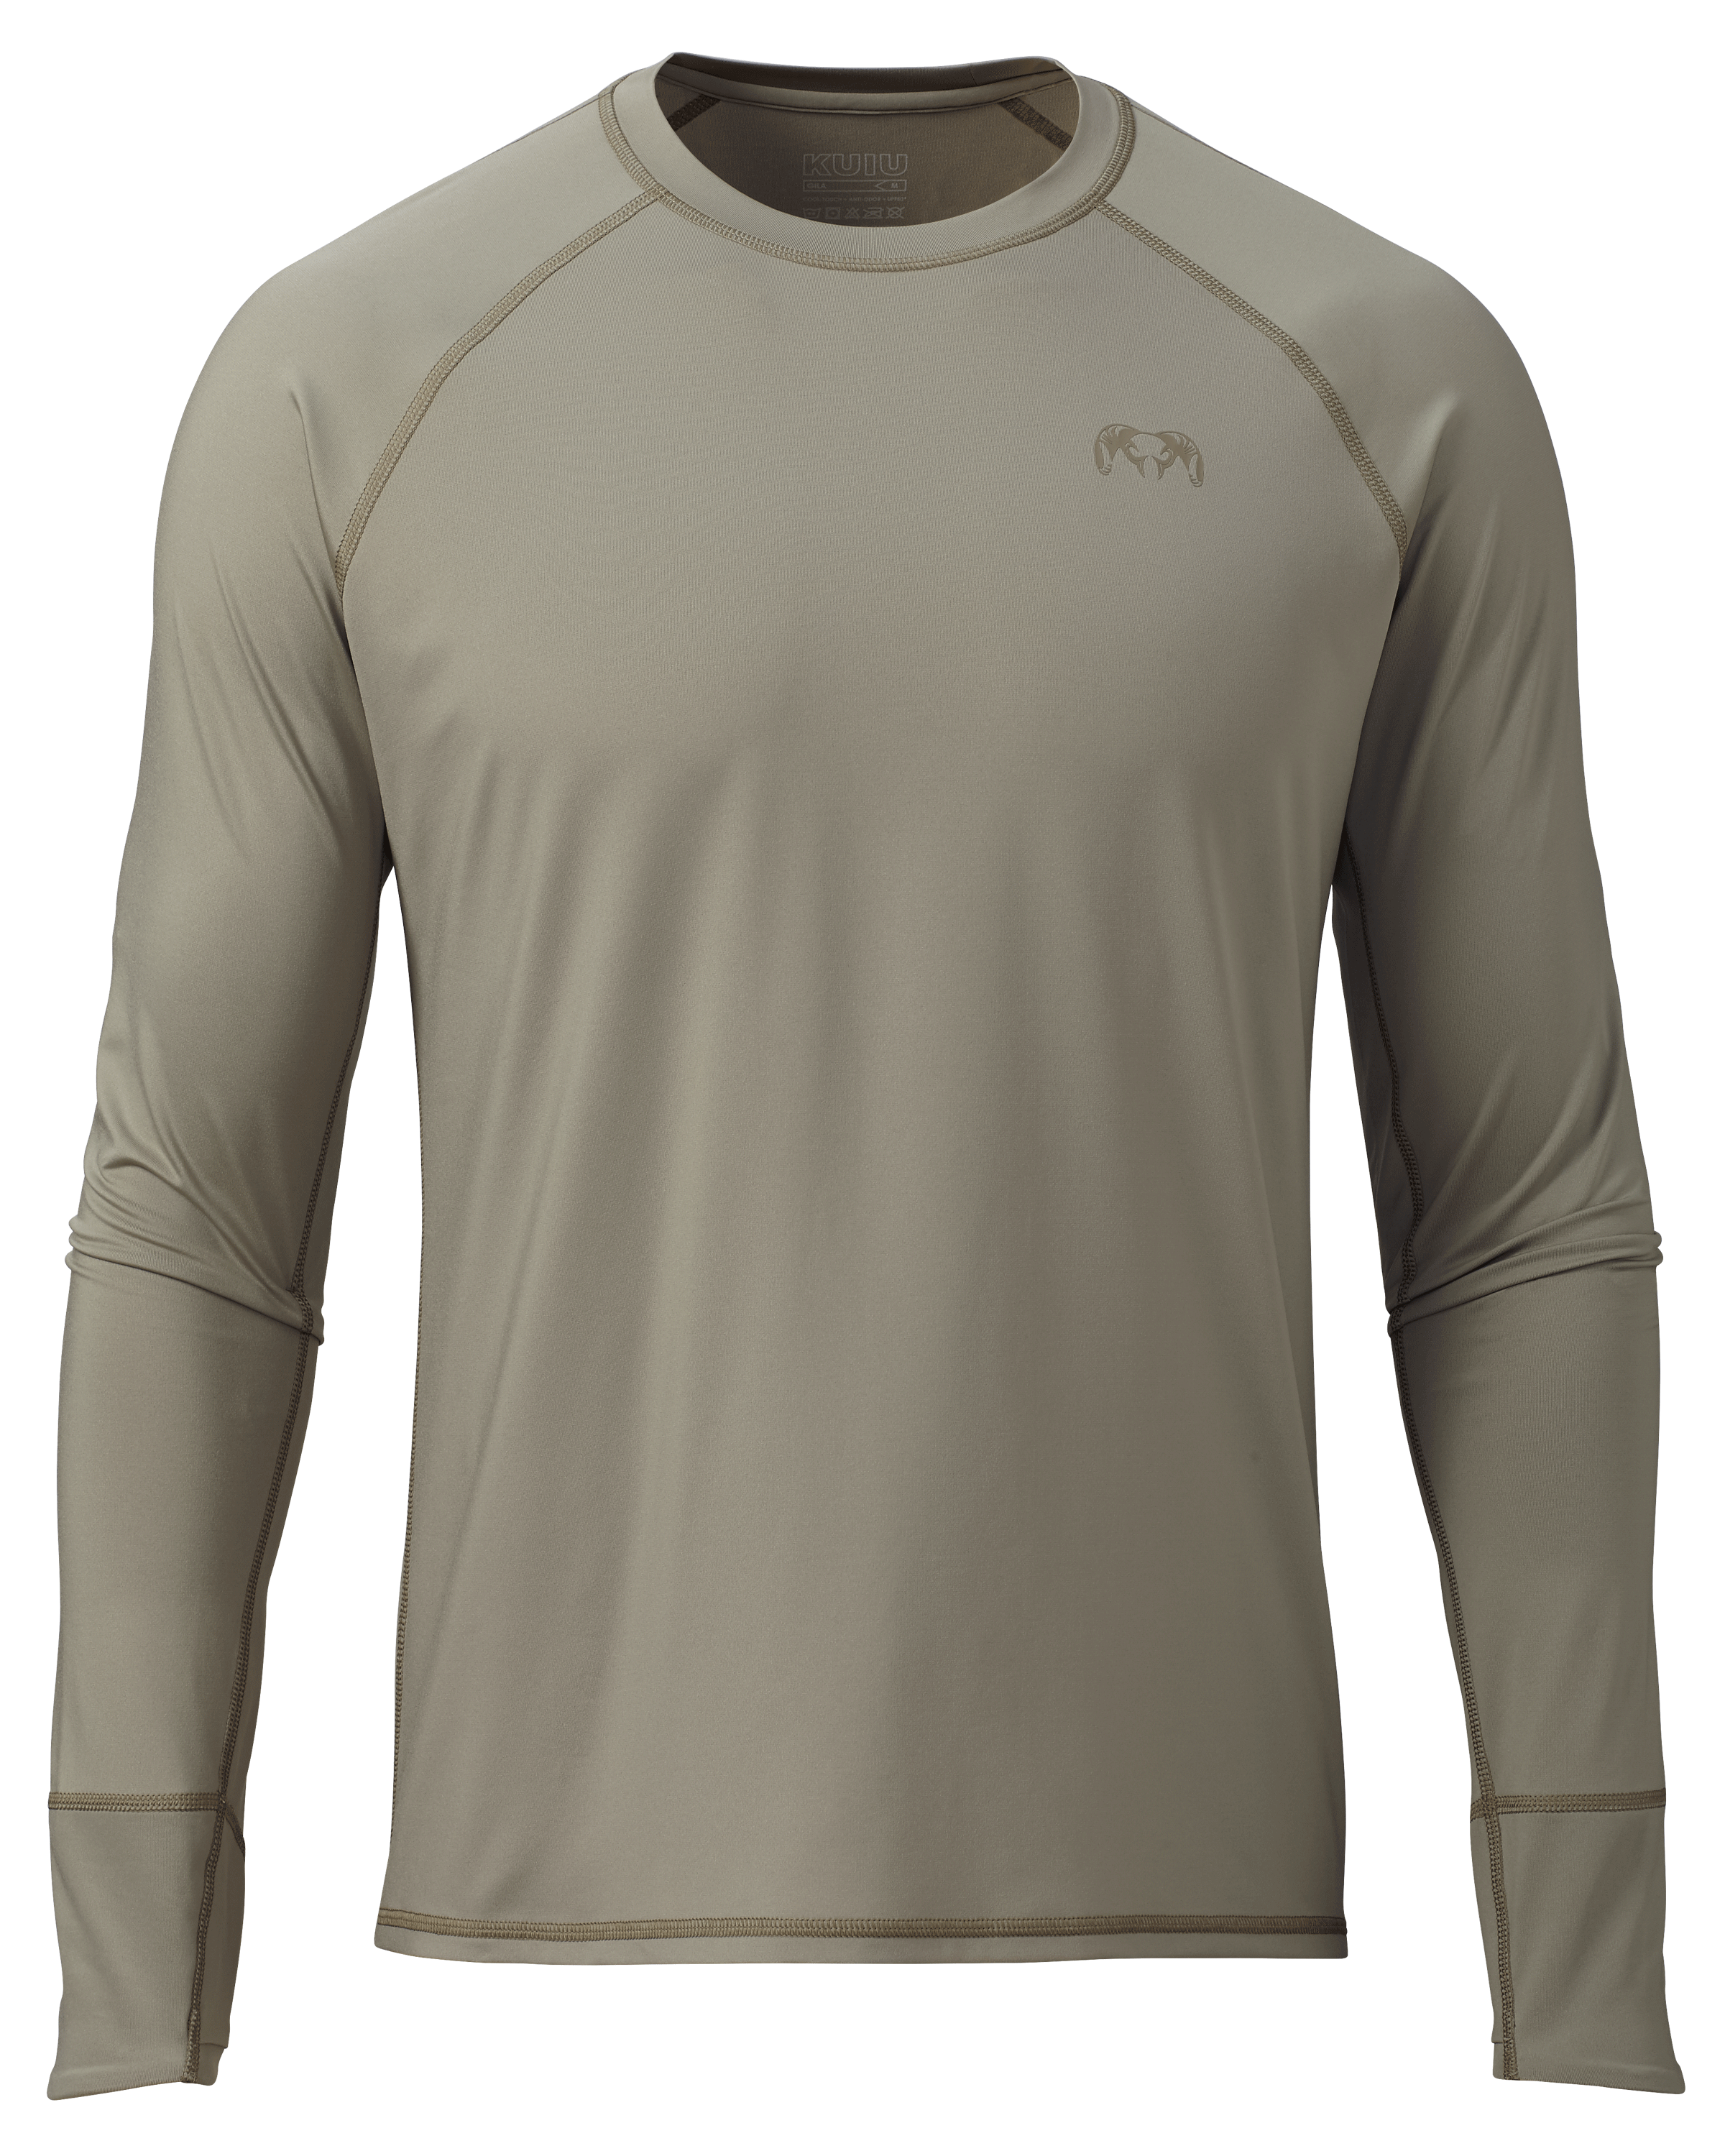 KUIU Gila Long Sleeves Crew Hunting Shirt in Bone | Size 4XL